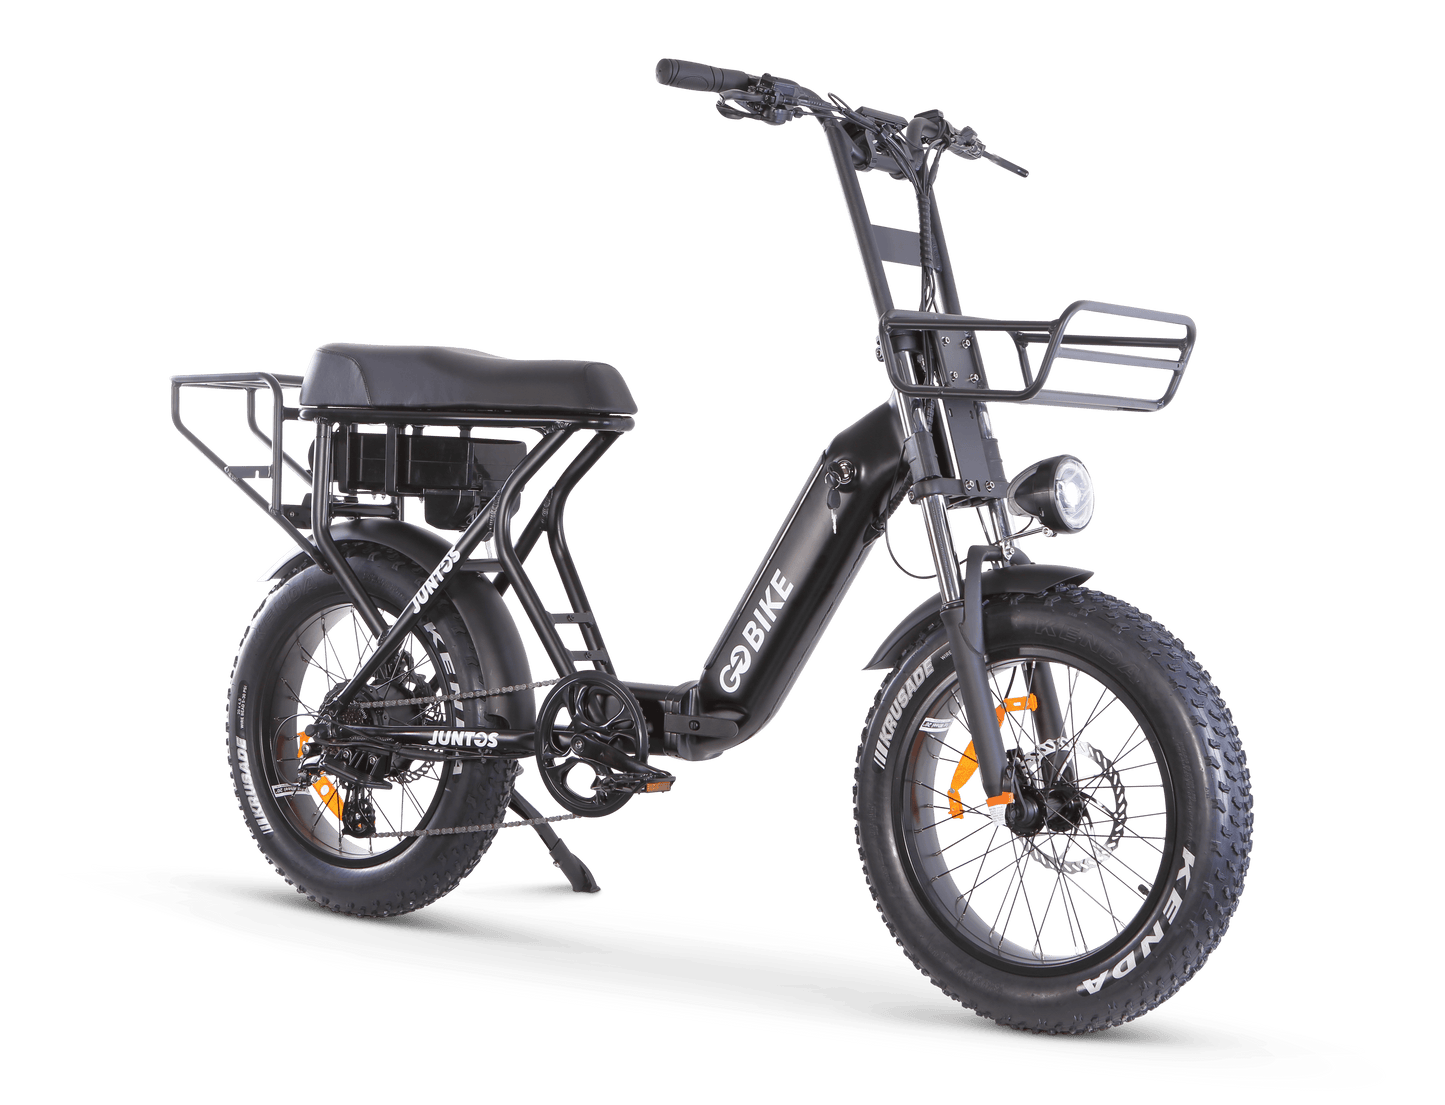 GOBIKE JUNTOS Foldable Step - Through Foldable Lightweight 750W Electric Bike